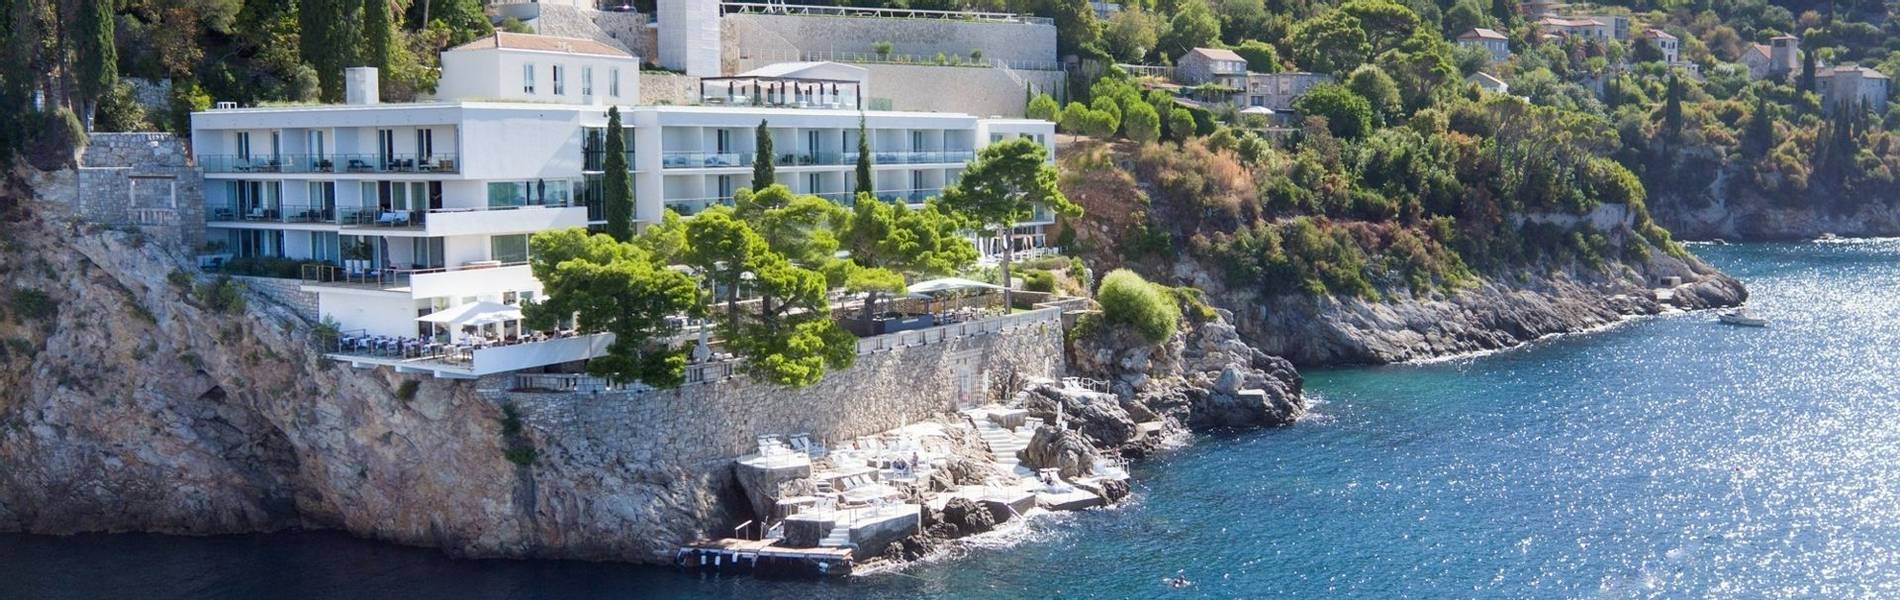 Hotel Villa Dubrovnik.jpg